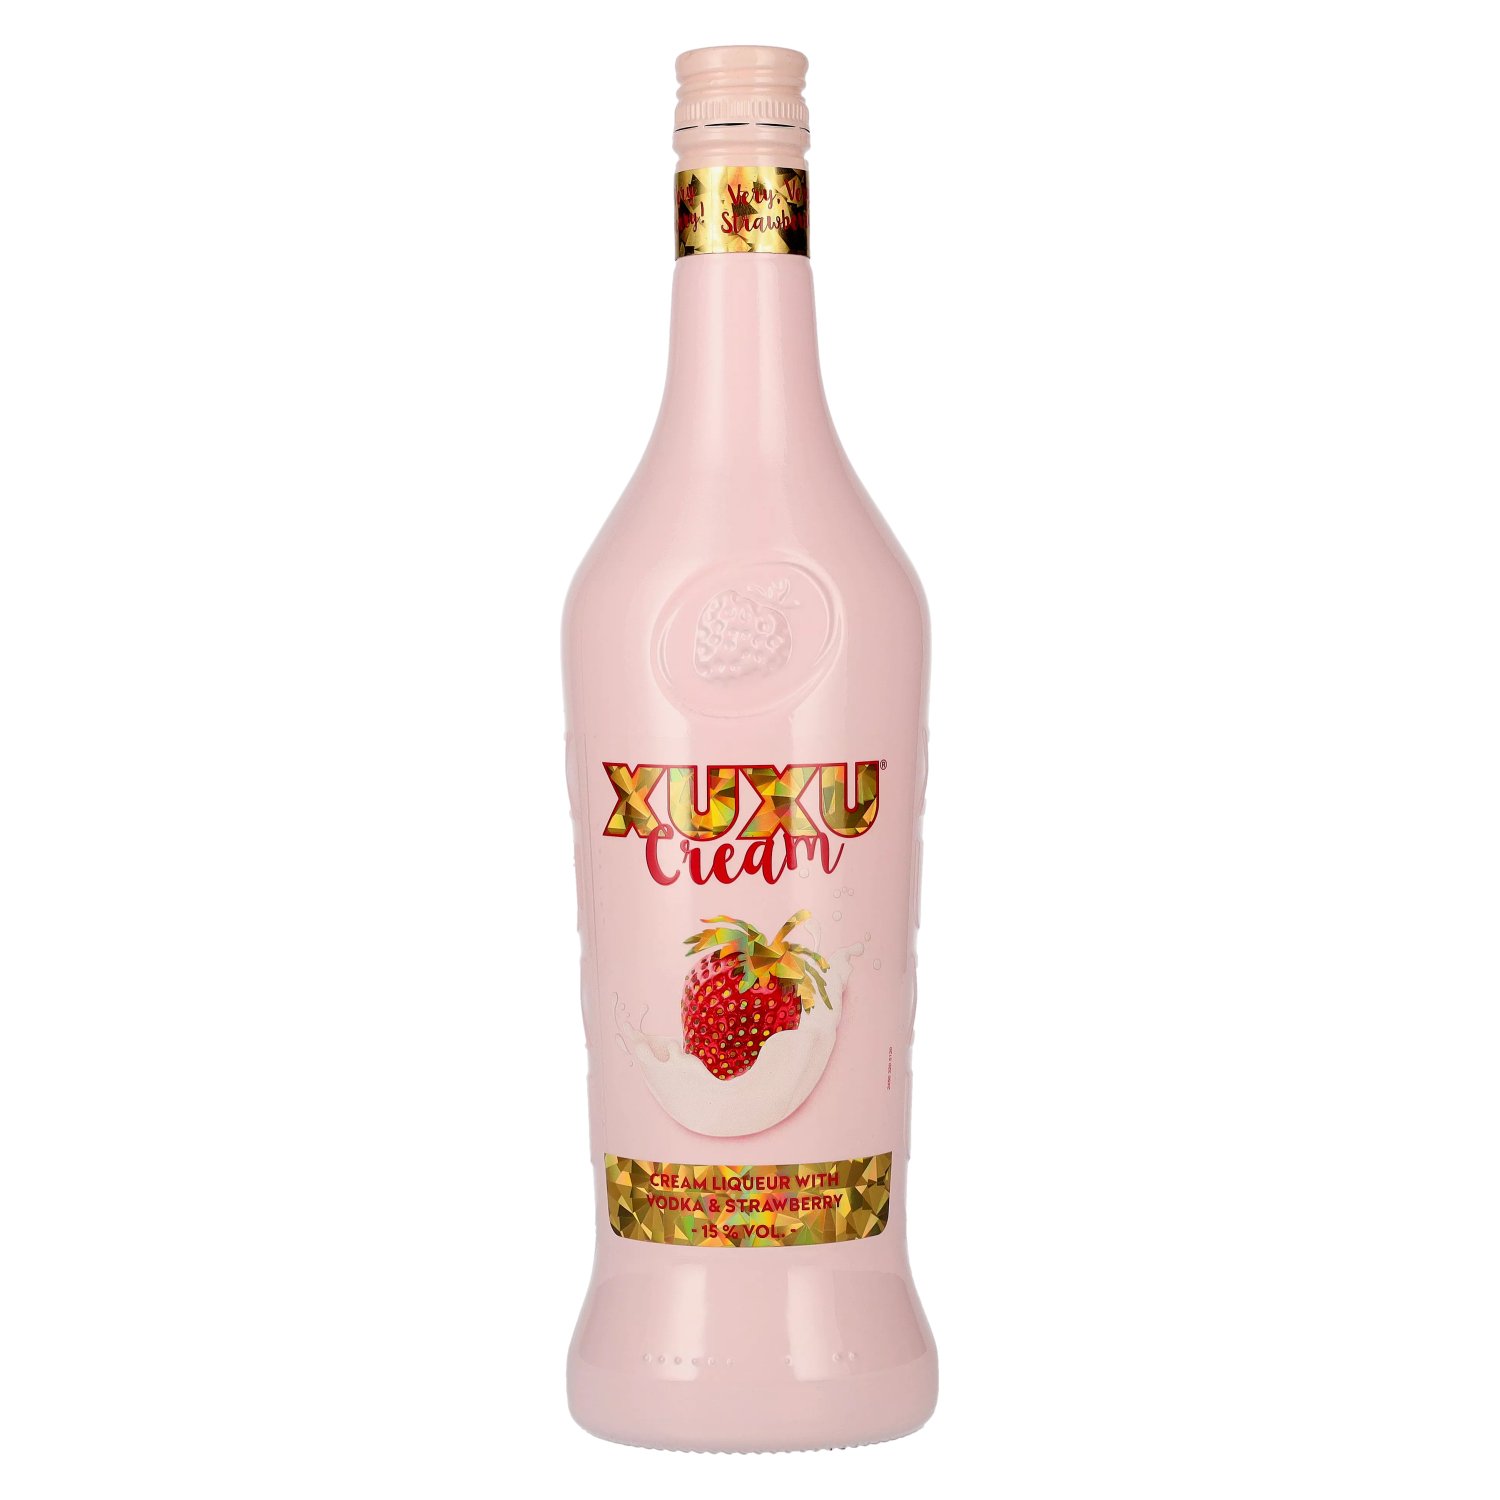 XUXU Cream Liqueur with Vodka & Strawberry 15% Vol. 0,7l